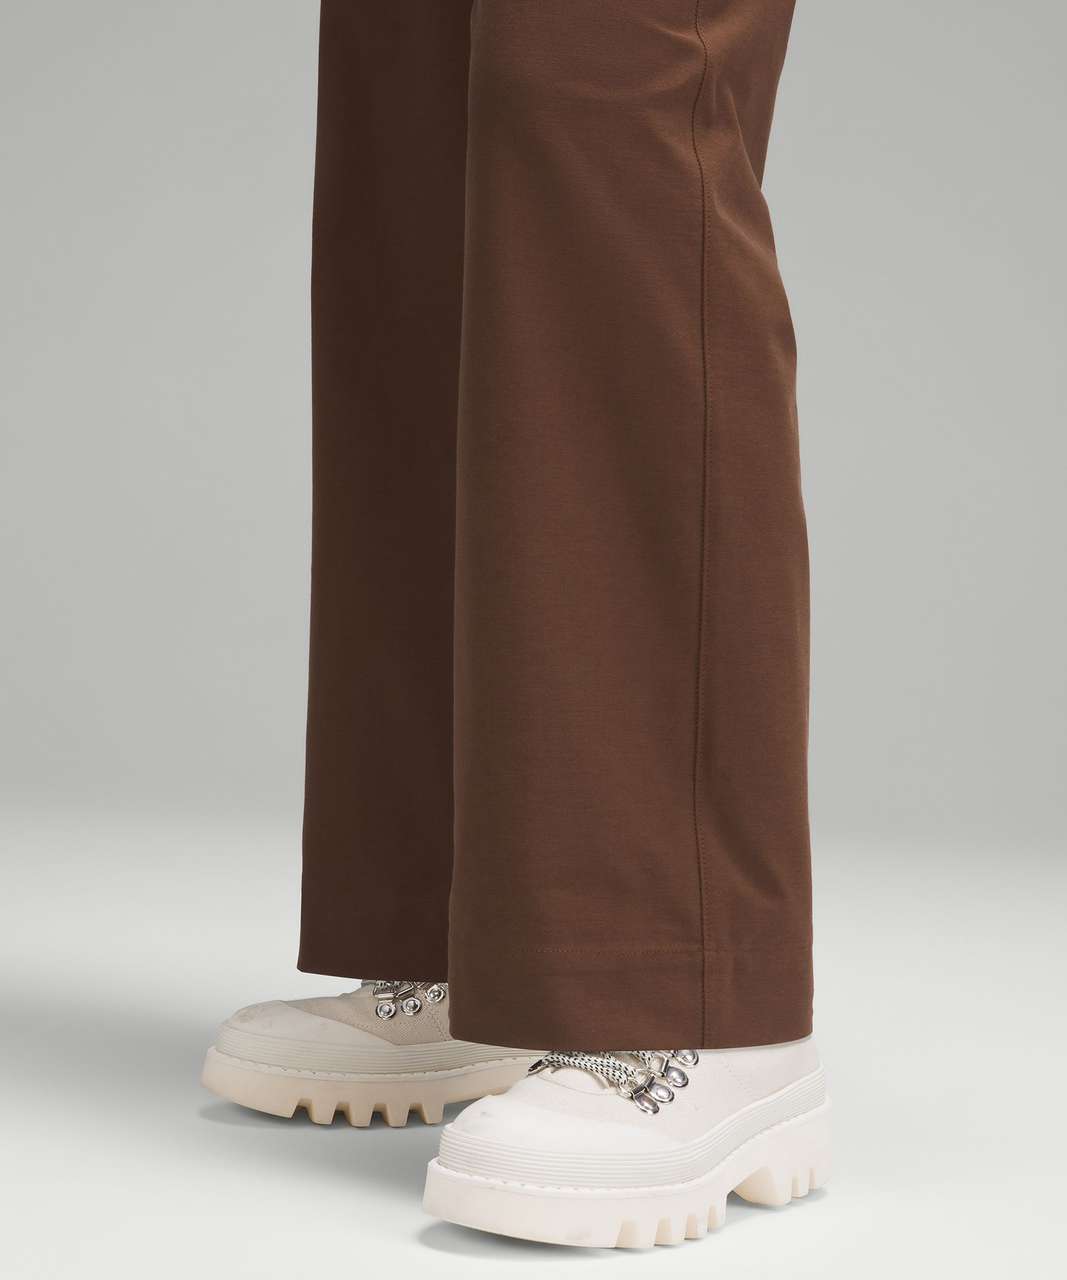 Lululemon City Sleek 5 Pocket High-Rise Wide-Leg Pant Full Length *Light Utilitech - Java